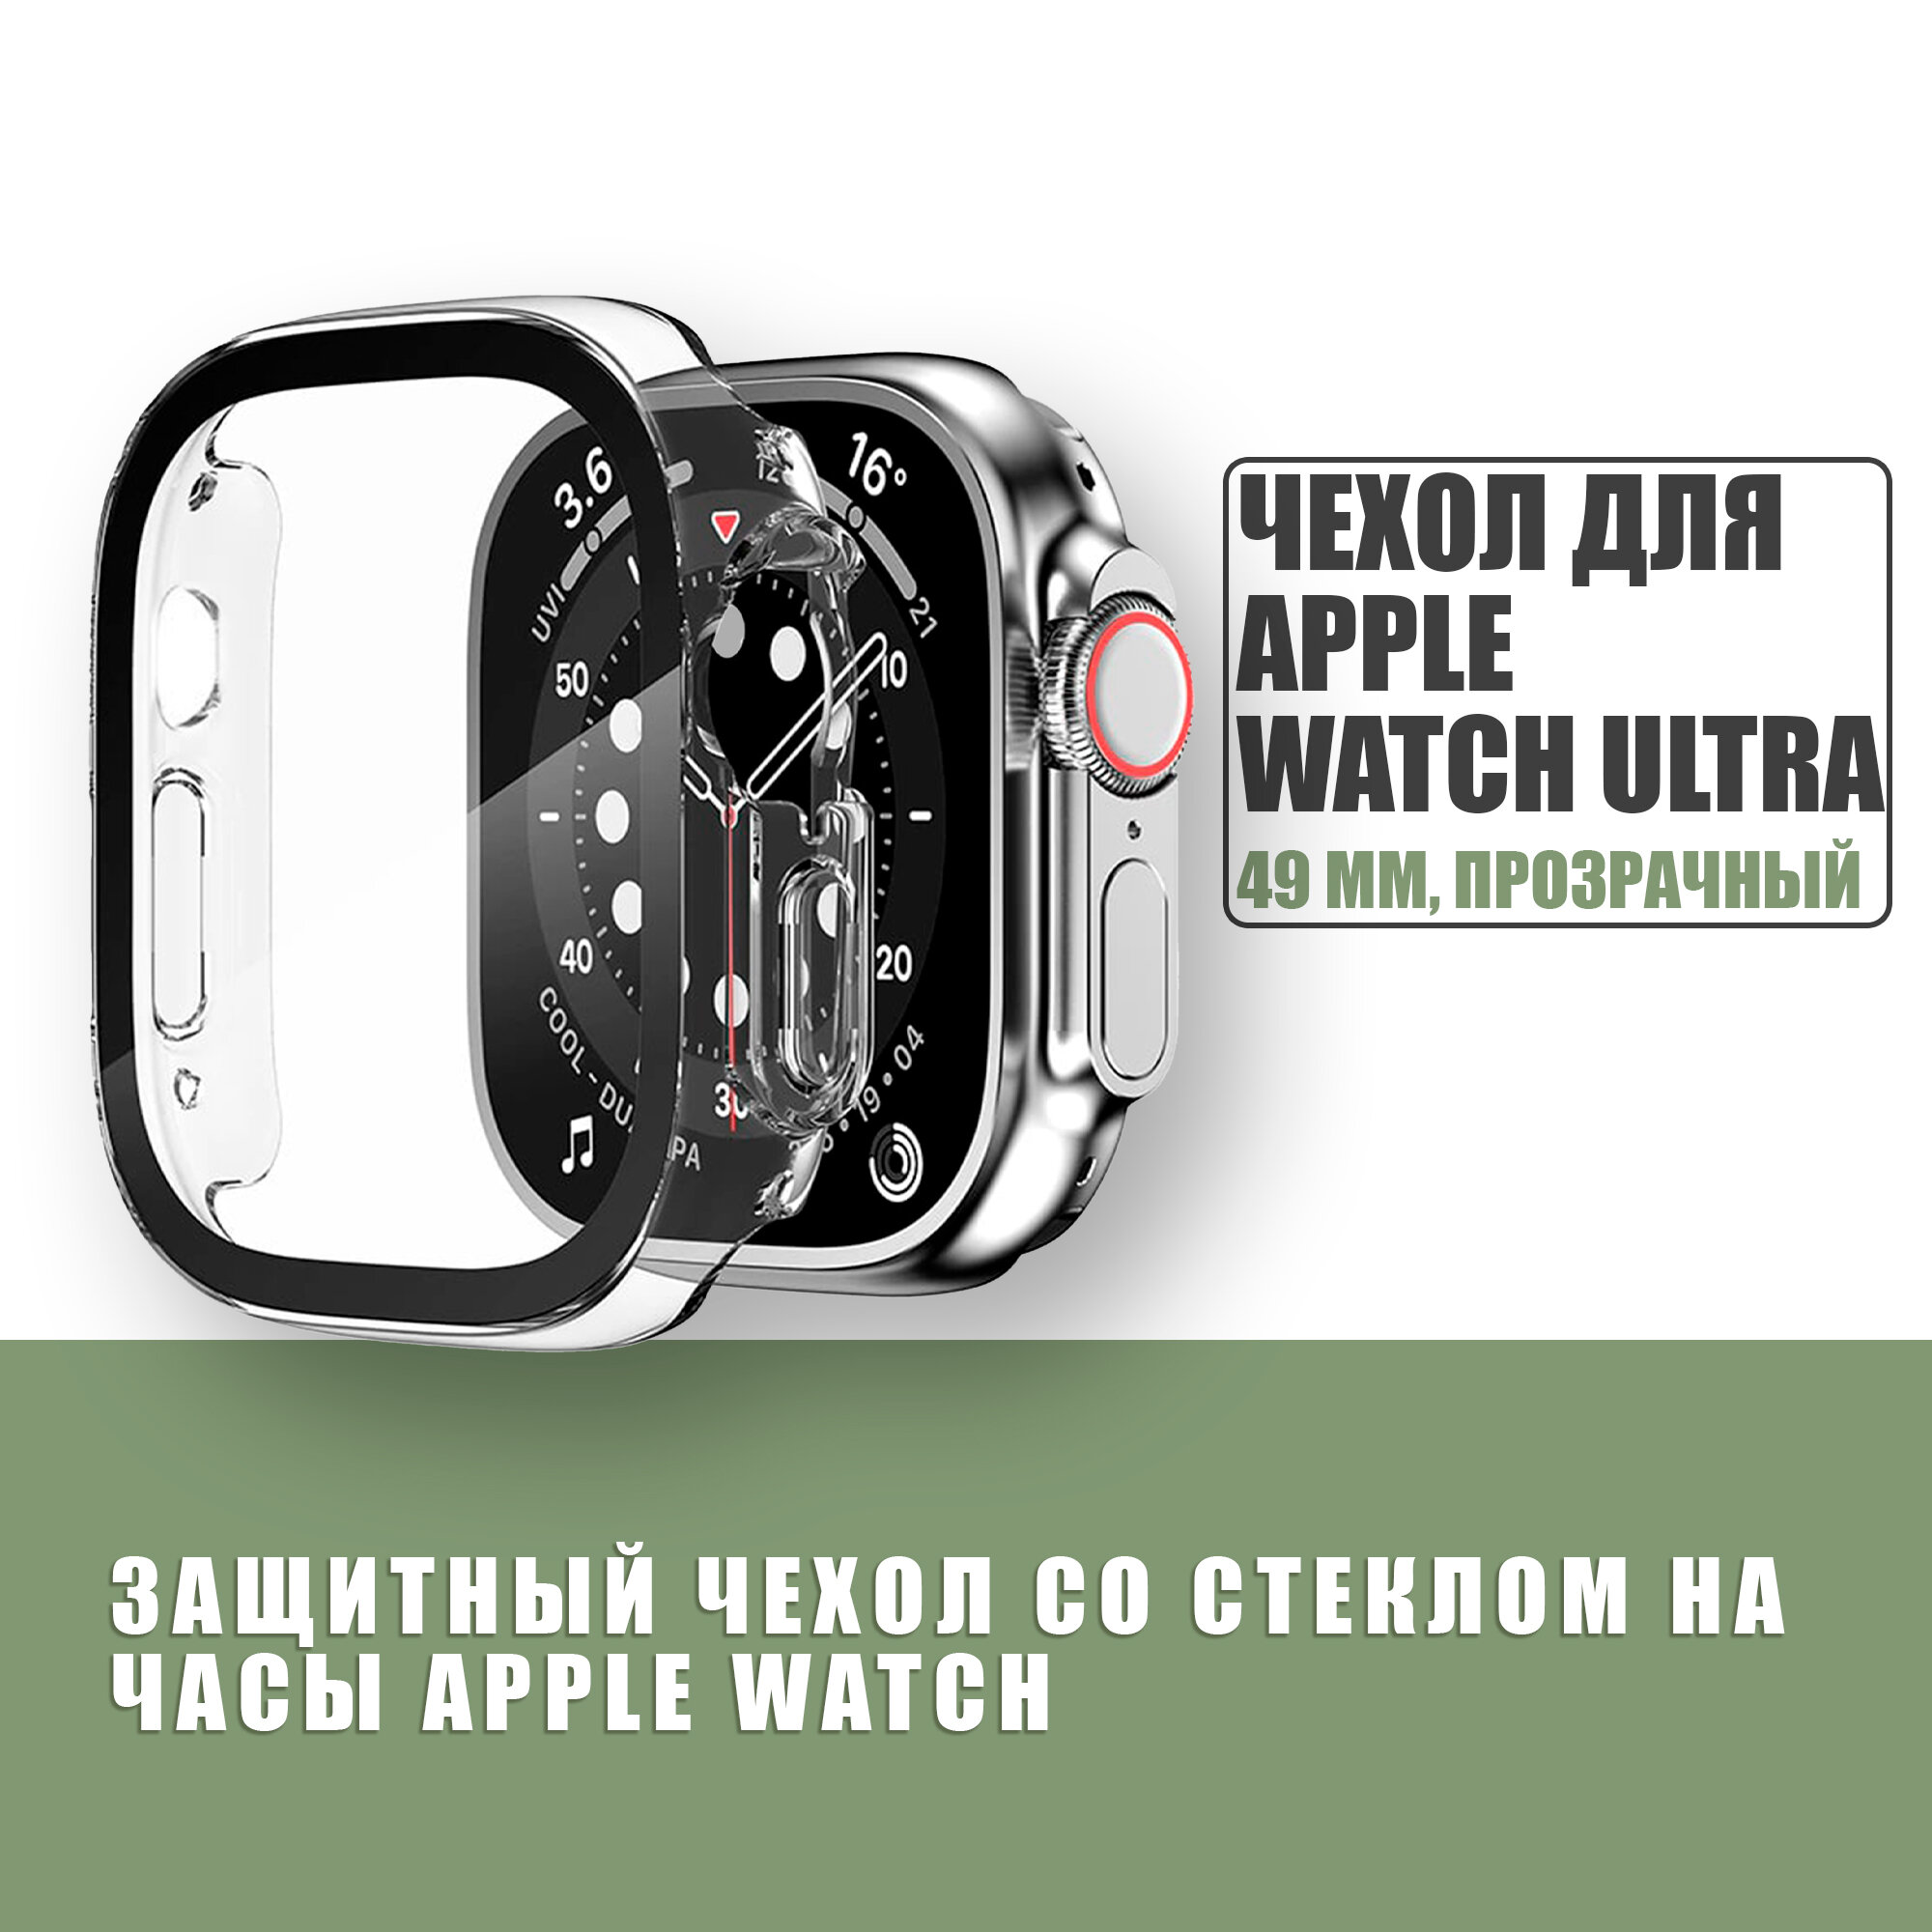 Защитный чехол стекло на часы Apple Watch 49 mm